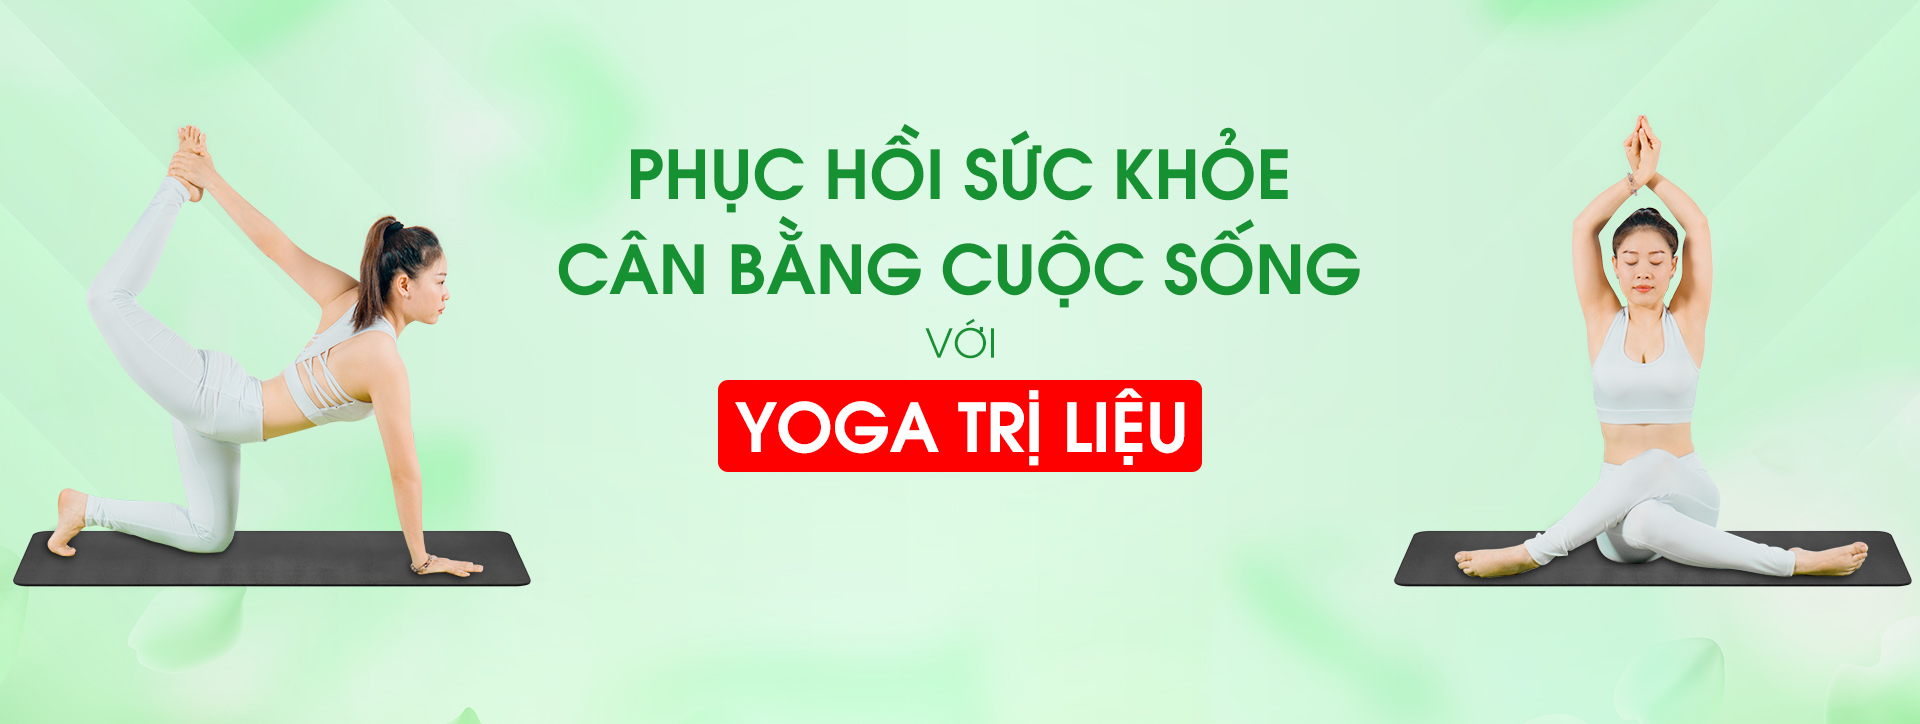 banner-yoga-6-benh-ly-co-ban